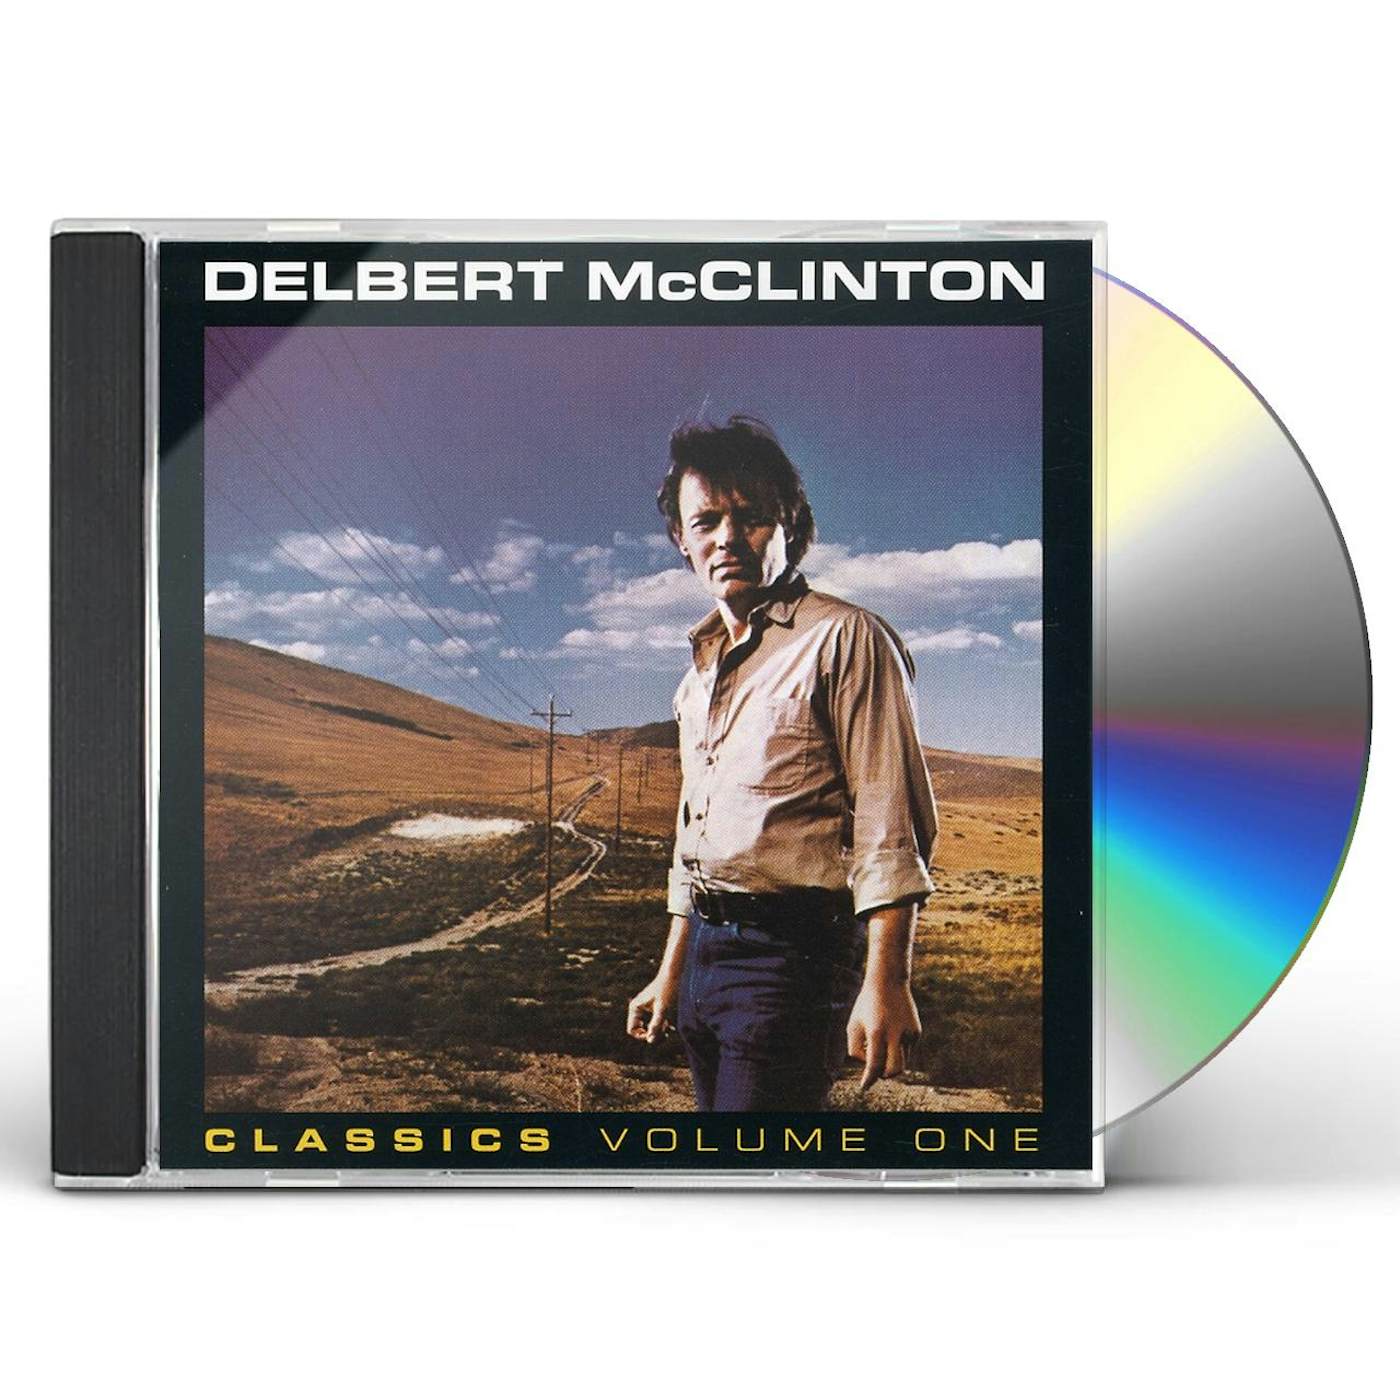 Delbert McClinton CLASSICS 1: JEALOUS KIND CD